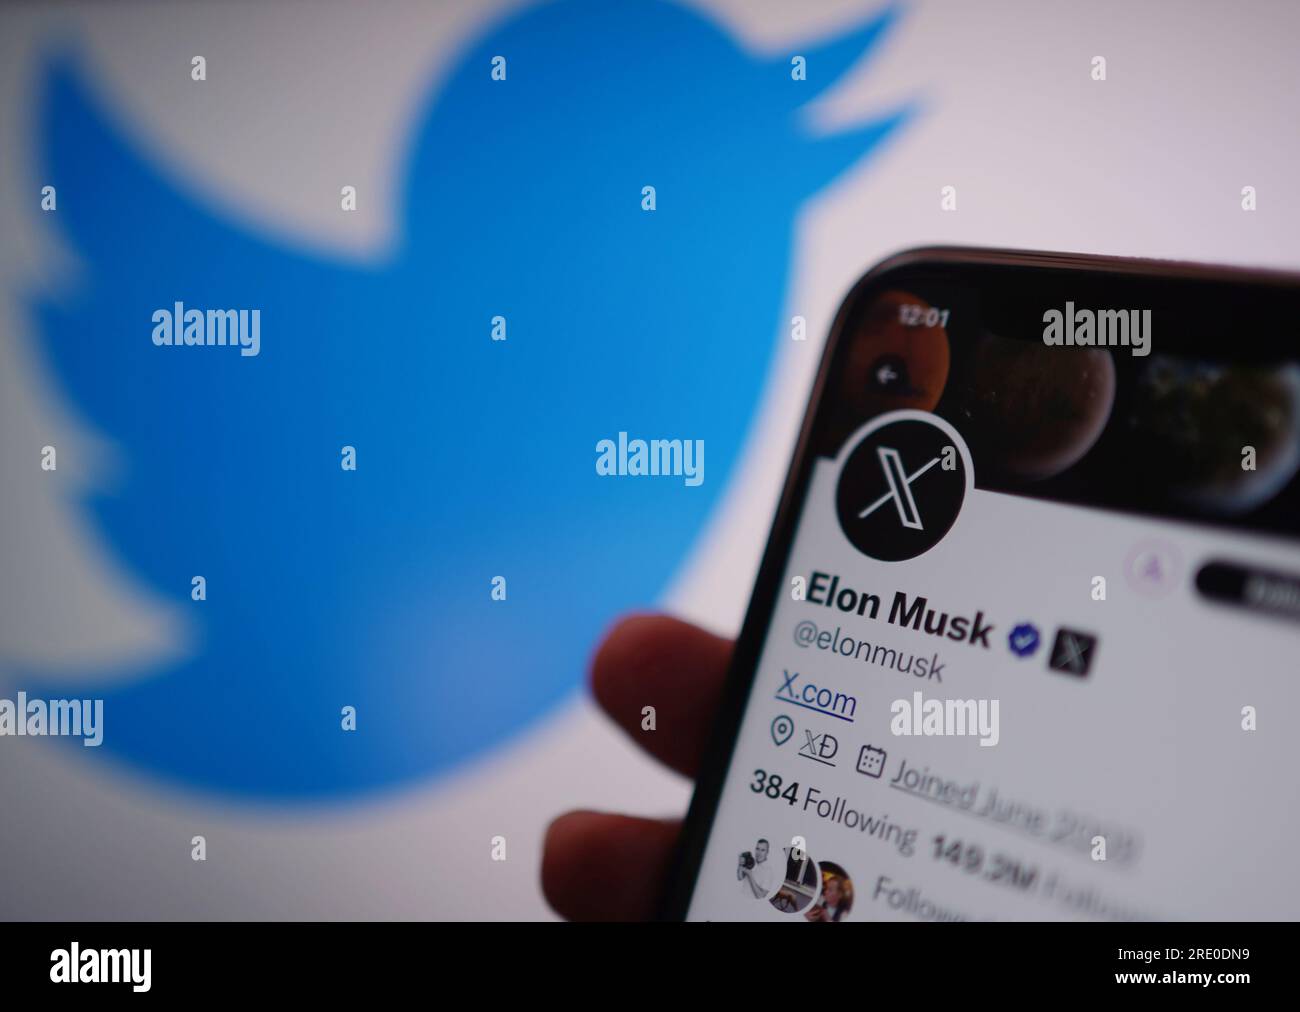 Un telefono visualizza l'account Twitter di Elon Musk, con il nuovo logo di Twitter e l'indirizzo del sito X.com. Twitter ha sostituito il famoso logo Bird della piattaforma di social media con una X come parte dei piani del proprietario Elon Musk di creare un'app "Everything". Data immagine: Lunedì 24 luglio 2023. Foto Stock